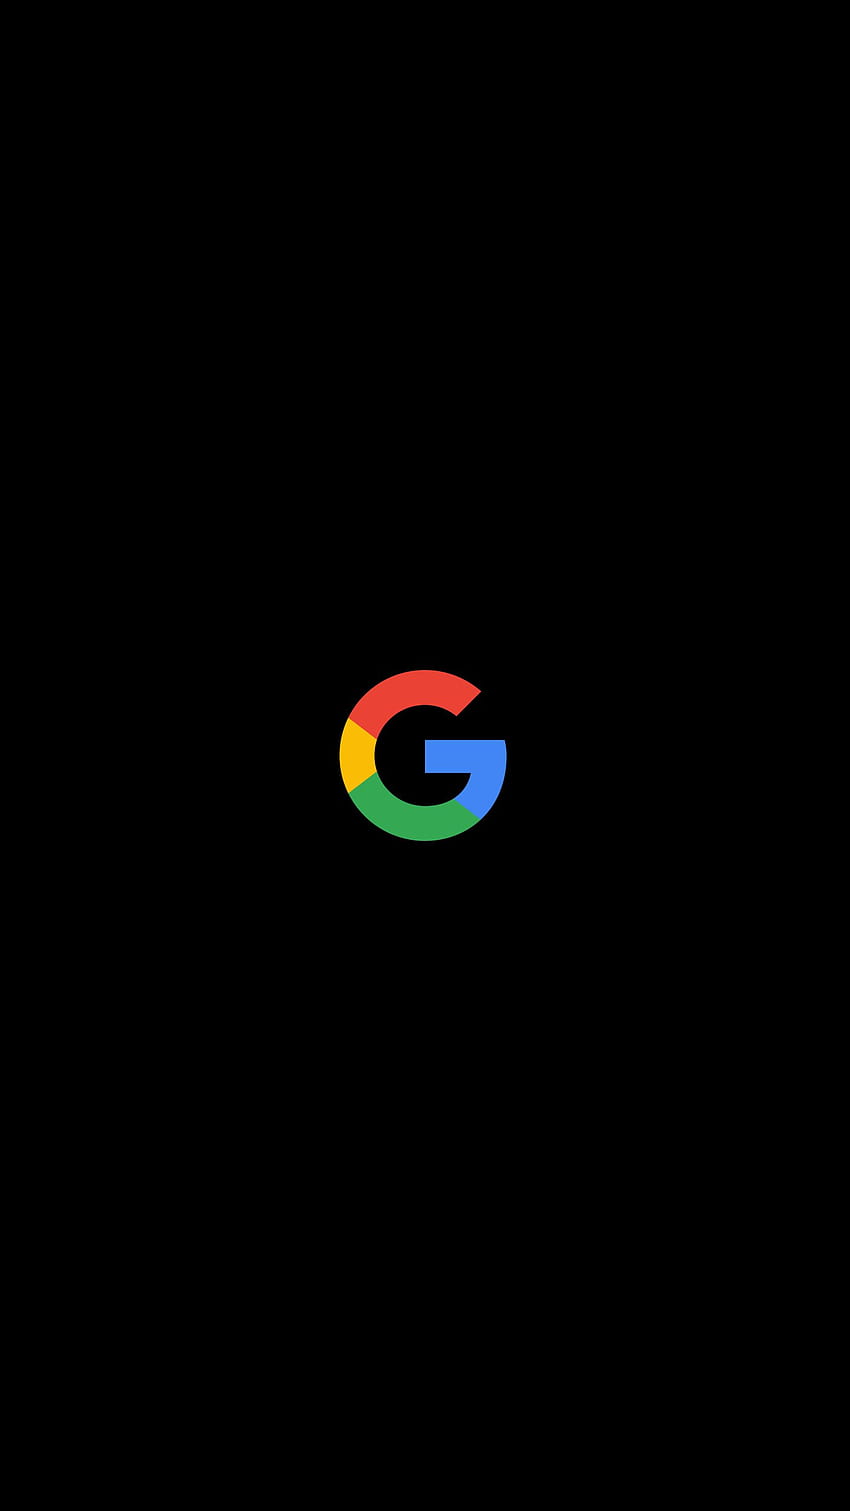 Hier ist ein Google-Logo-OLED, das ich für euch gemacht habe [passend für Pixel XL]: GooglePixel, Google-Pixel-OLED HD-Handy-Hintergrundbild